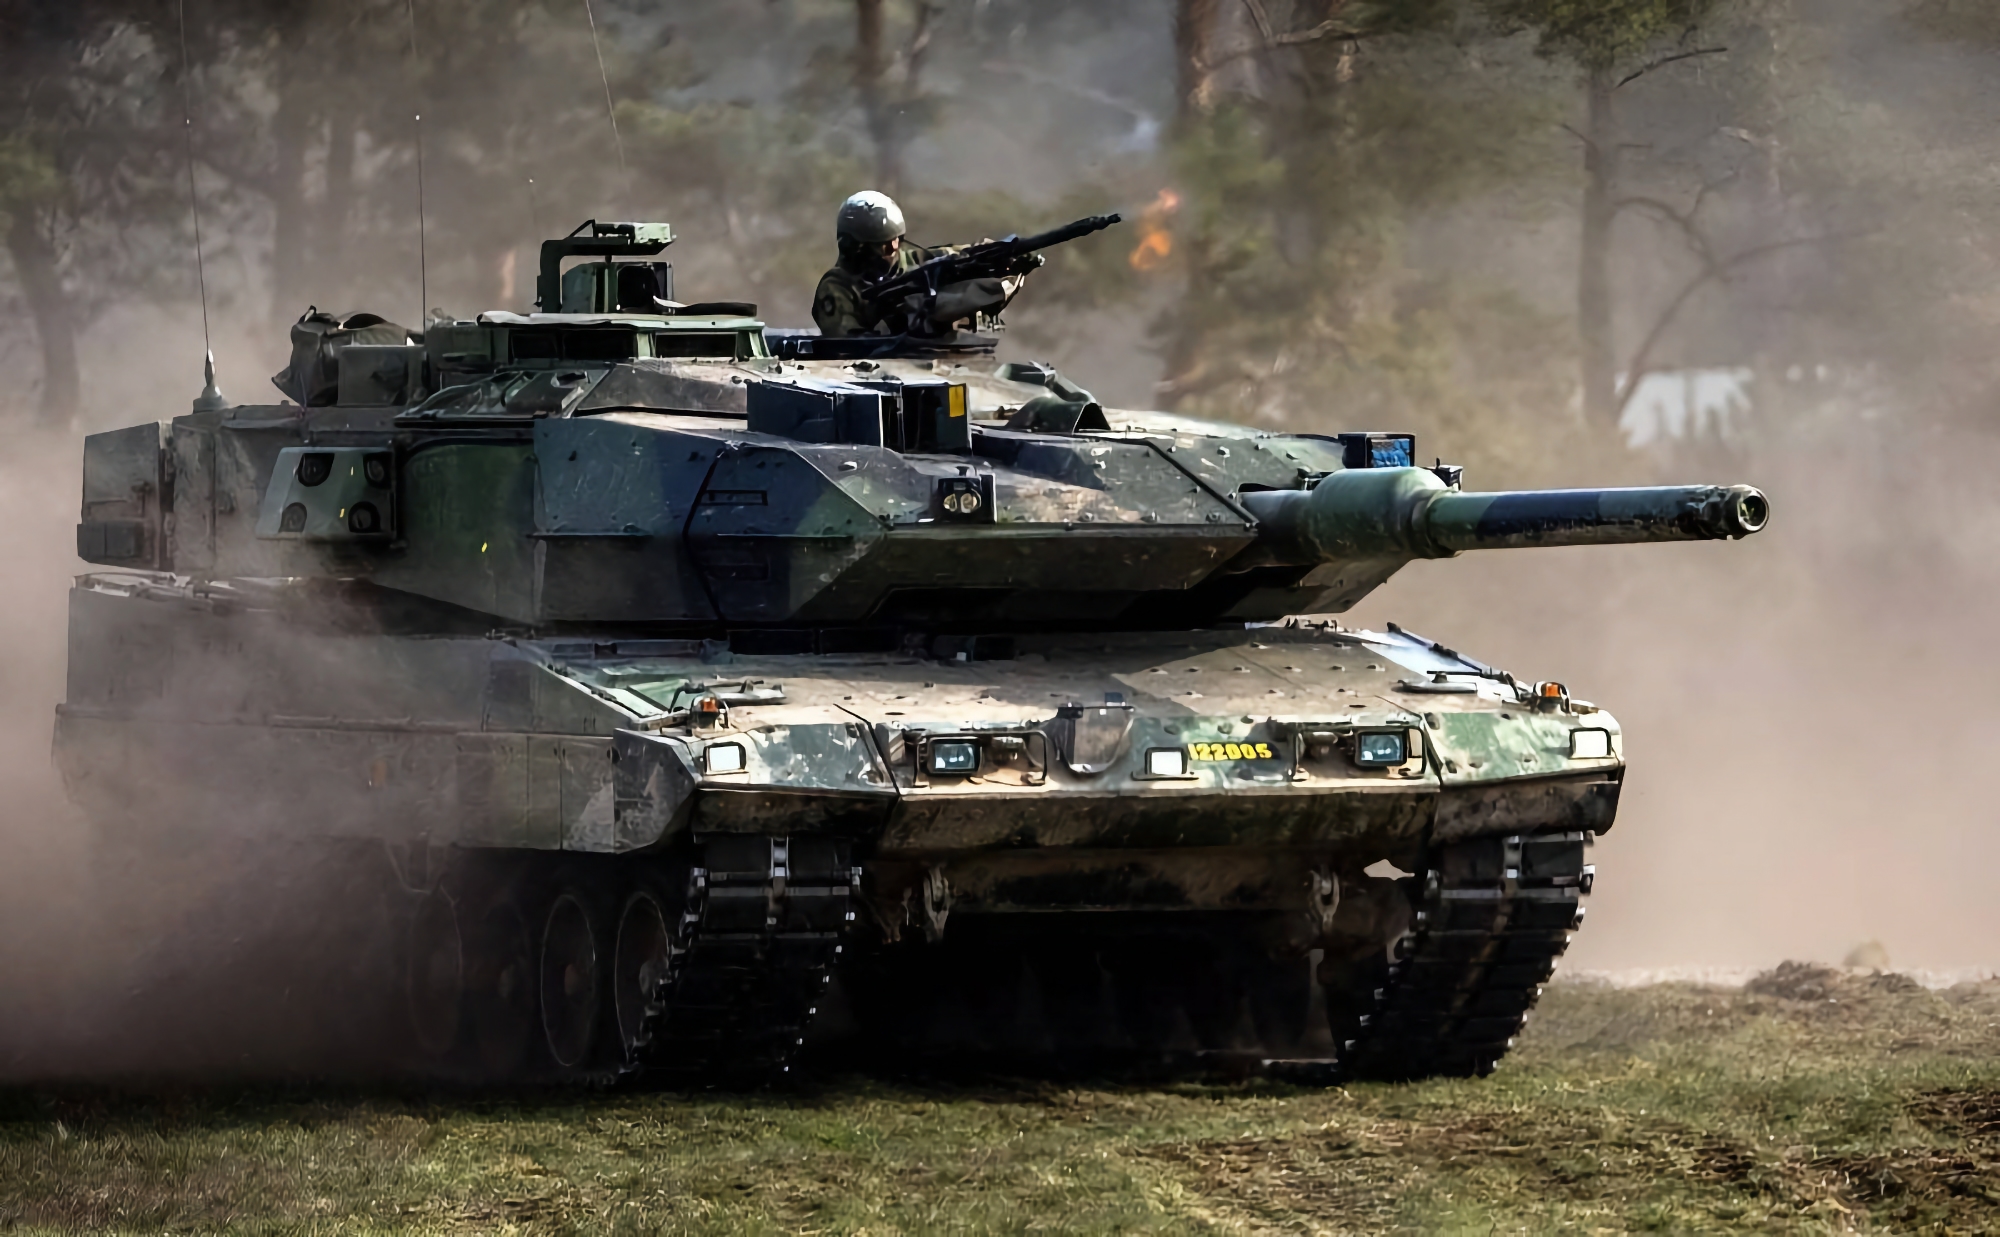 Sverige vil overføre en ny militær hjælpepakke til Ukraine, herunder ammunition til CV90 infanterikampkøretøjer og Stridsvagn 122 (også kaldet Leopard 2A5) kampvogne.